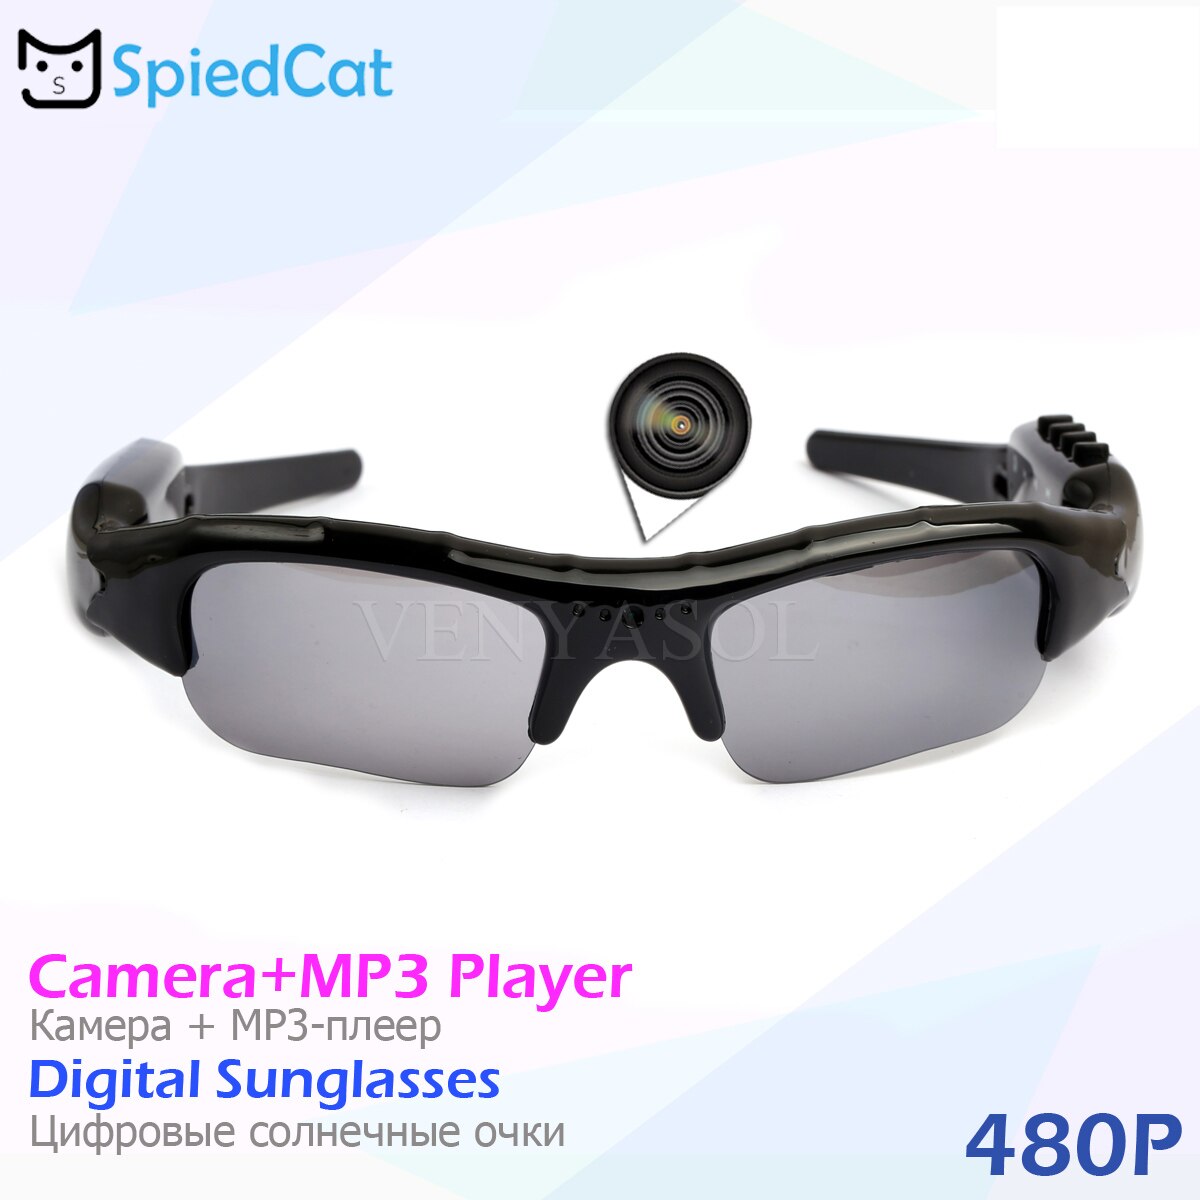 Lunettes intelligentes musique enregistreur vidéo DV MP3 HD 1080P Bluetooth connexion téléphone Sport de plein air lunettes de soleil caméra Support TF carte